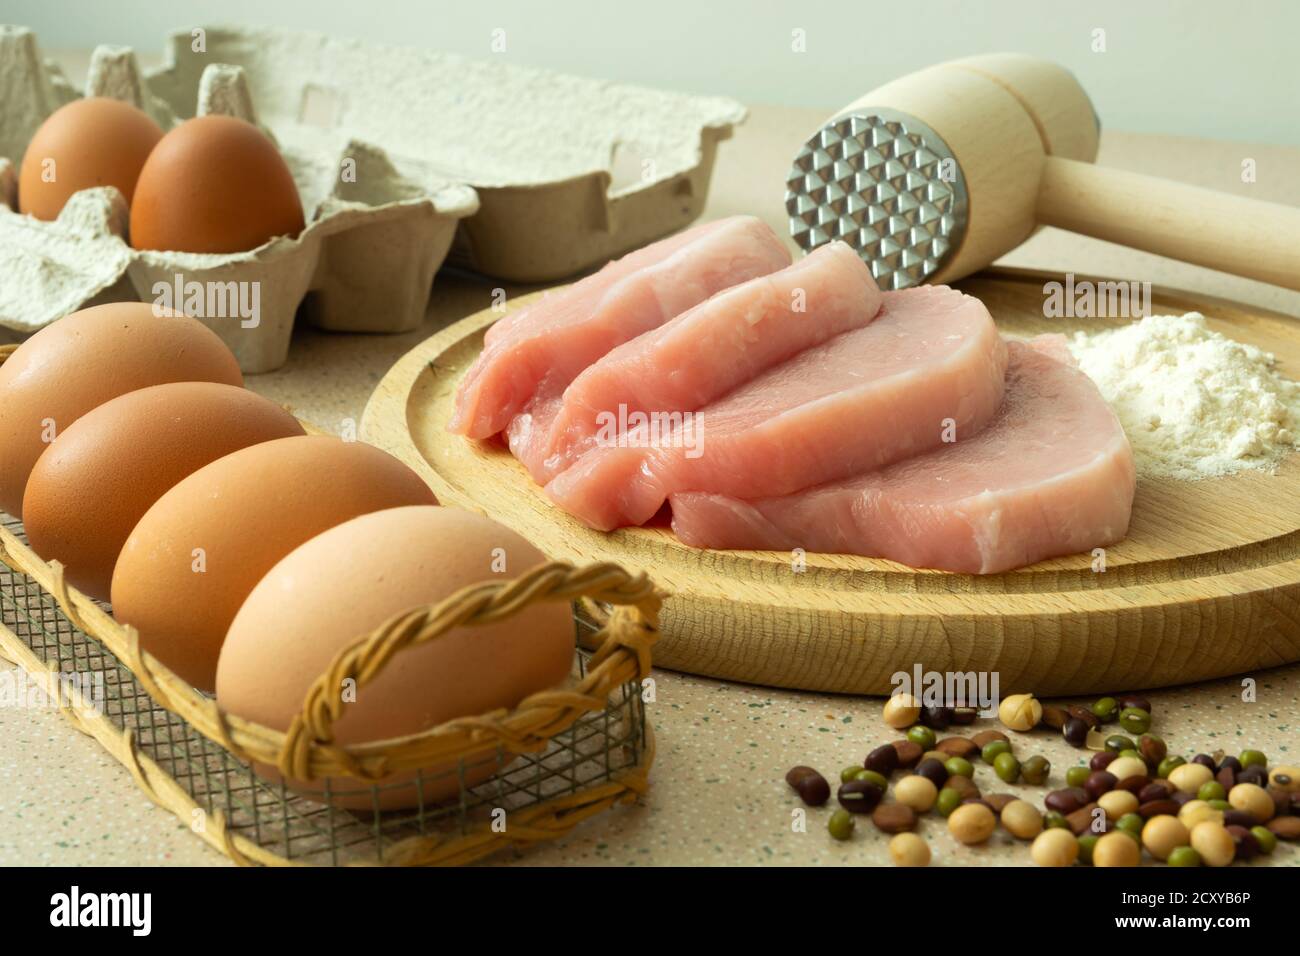 Pork loin on a board, flour, eggs and spices Stock Photo